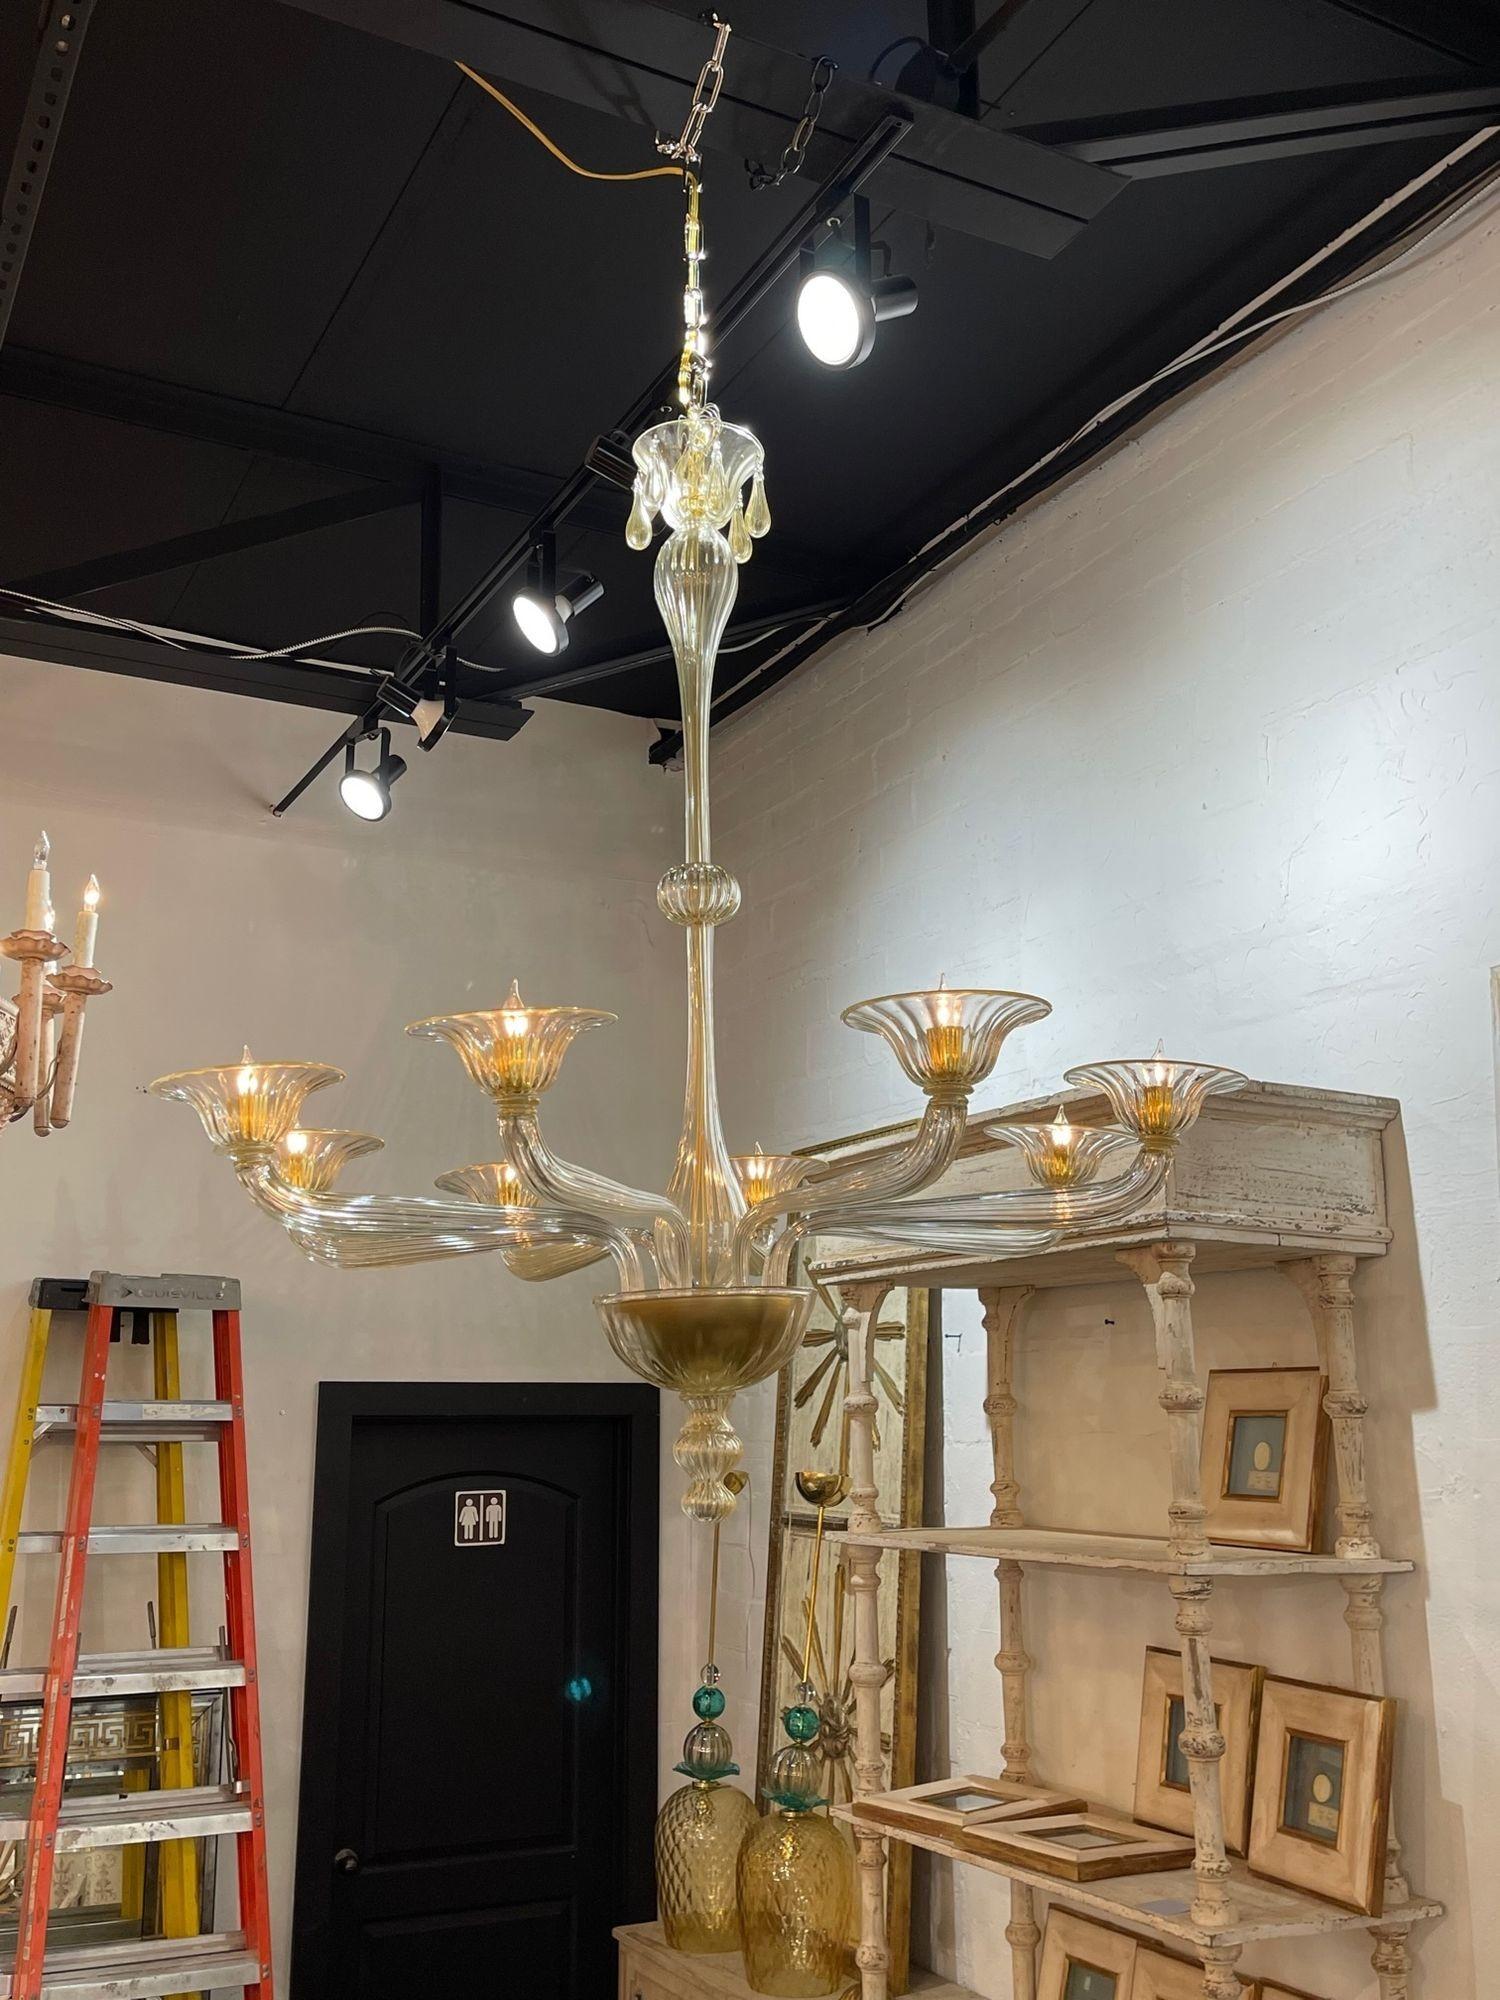 Stilvoller moderner Muranoglas-Kronleuchter mit 8 Lichtern. Mit wunderschönem, glitzerndem Goldglas und dekorativen Armen und Sockeln. Eine beeindruckende Aussage!.